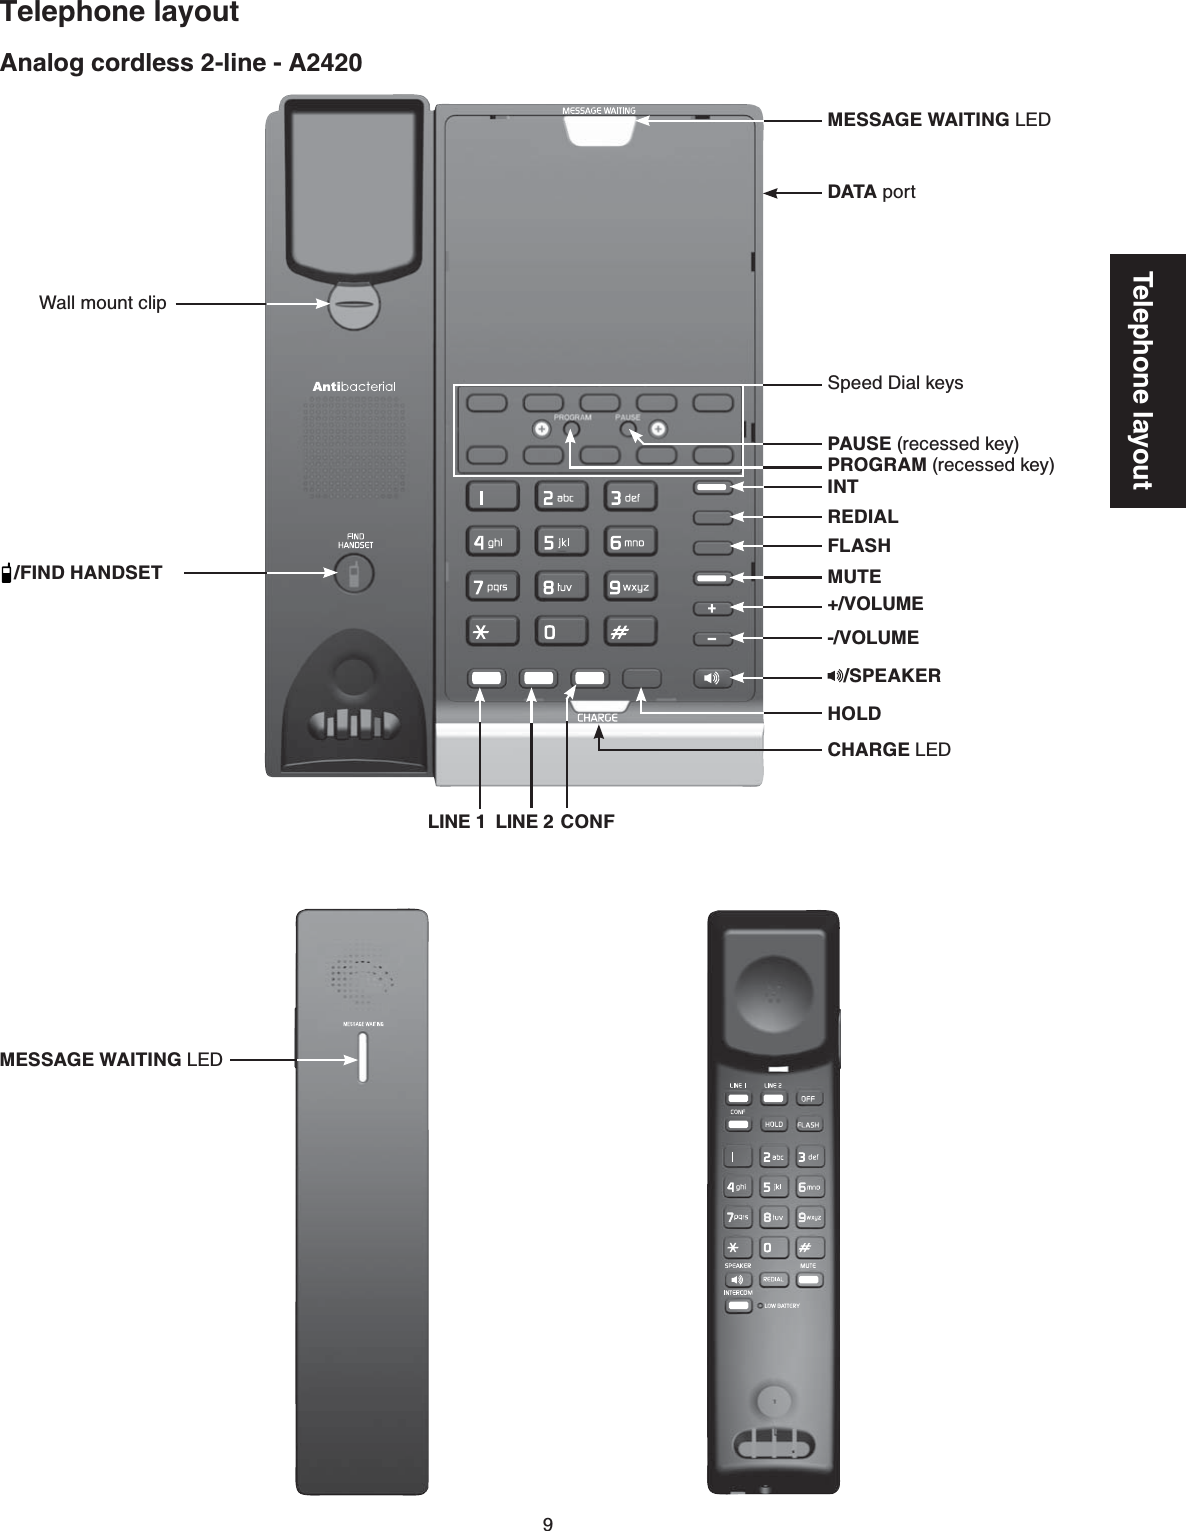 9Telephone layoutAnalog cordless 2-line - A2420Telephone layoutCHARGE LEDLINE 1 LINE 2 CONFMESSAGE WAITING LEDWall mount clip/FIND HANDSETHOLDMUTEFLASHREDIALPROGRAM (recessed key)PAUSE (recessed key)Speed Dial keysDATA port/SPEAKERINT-/VOLUME+/VOLUMEMESSAGE WAITING LED